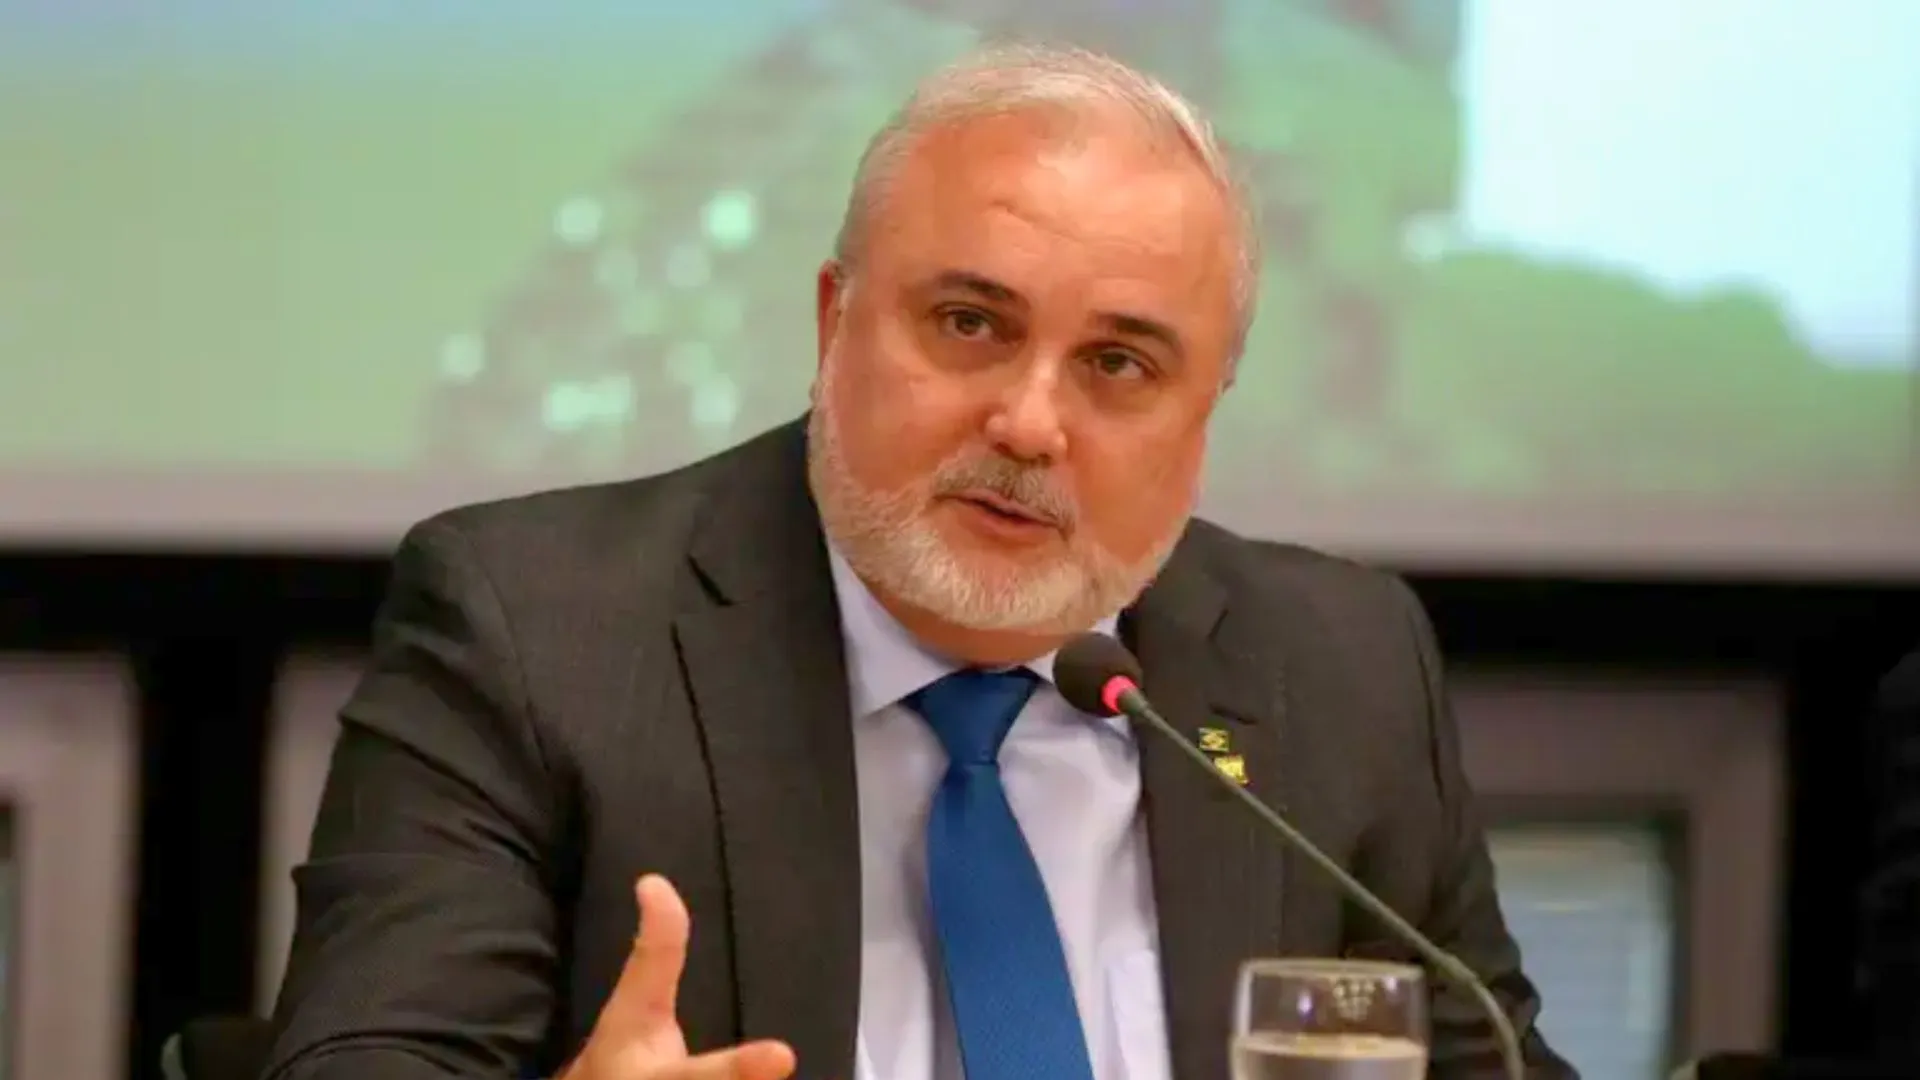 Jean Paul Prates, presidente da Petrobras e um dos indicados para conselho da companhia